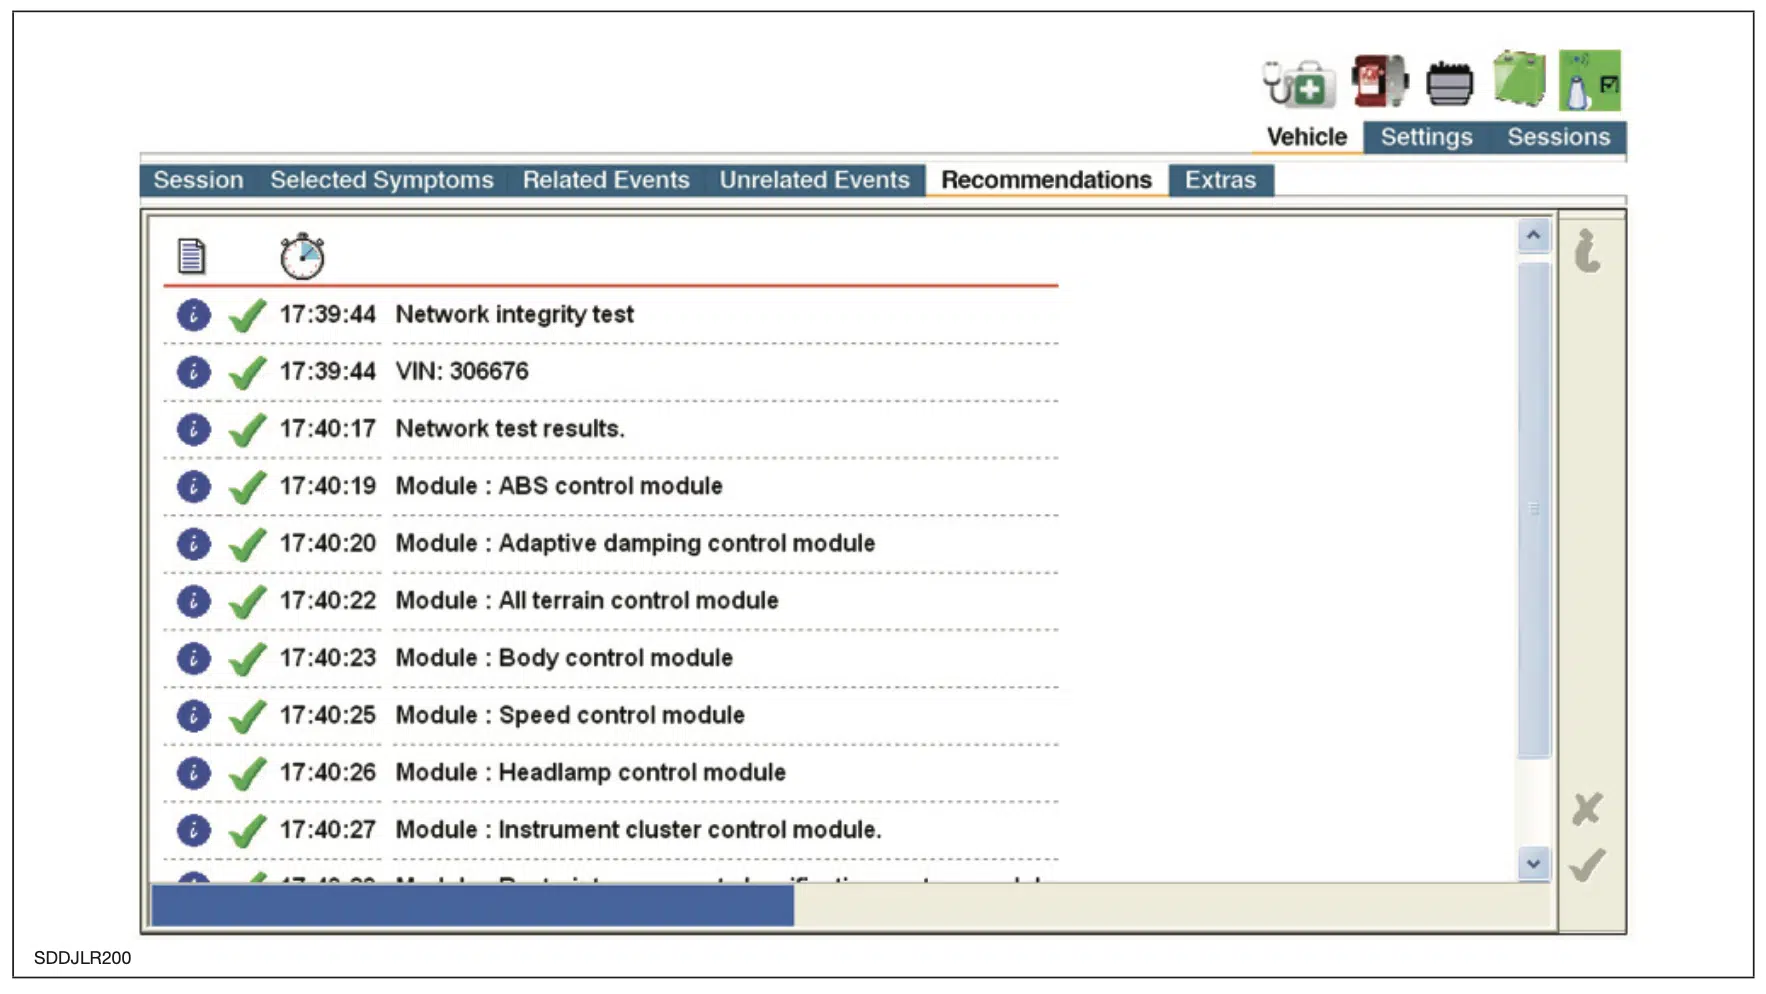 Capture d'écran de la session du logiciel JLR SDD pour la liste de contrôle des actions recommandées après le rapport sur les symptômes du véhicule